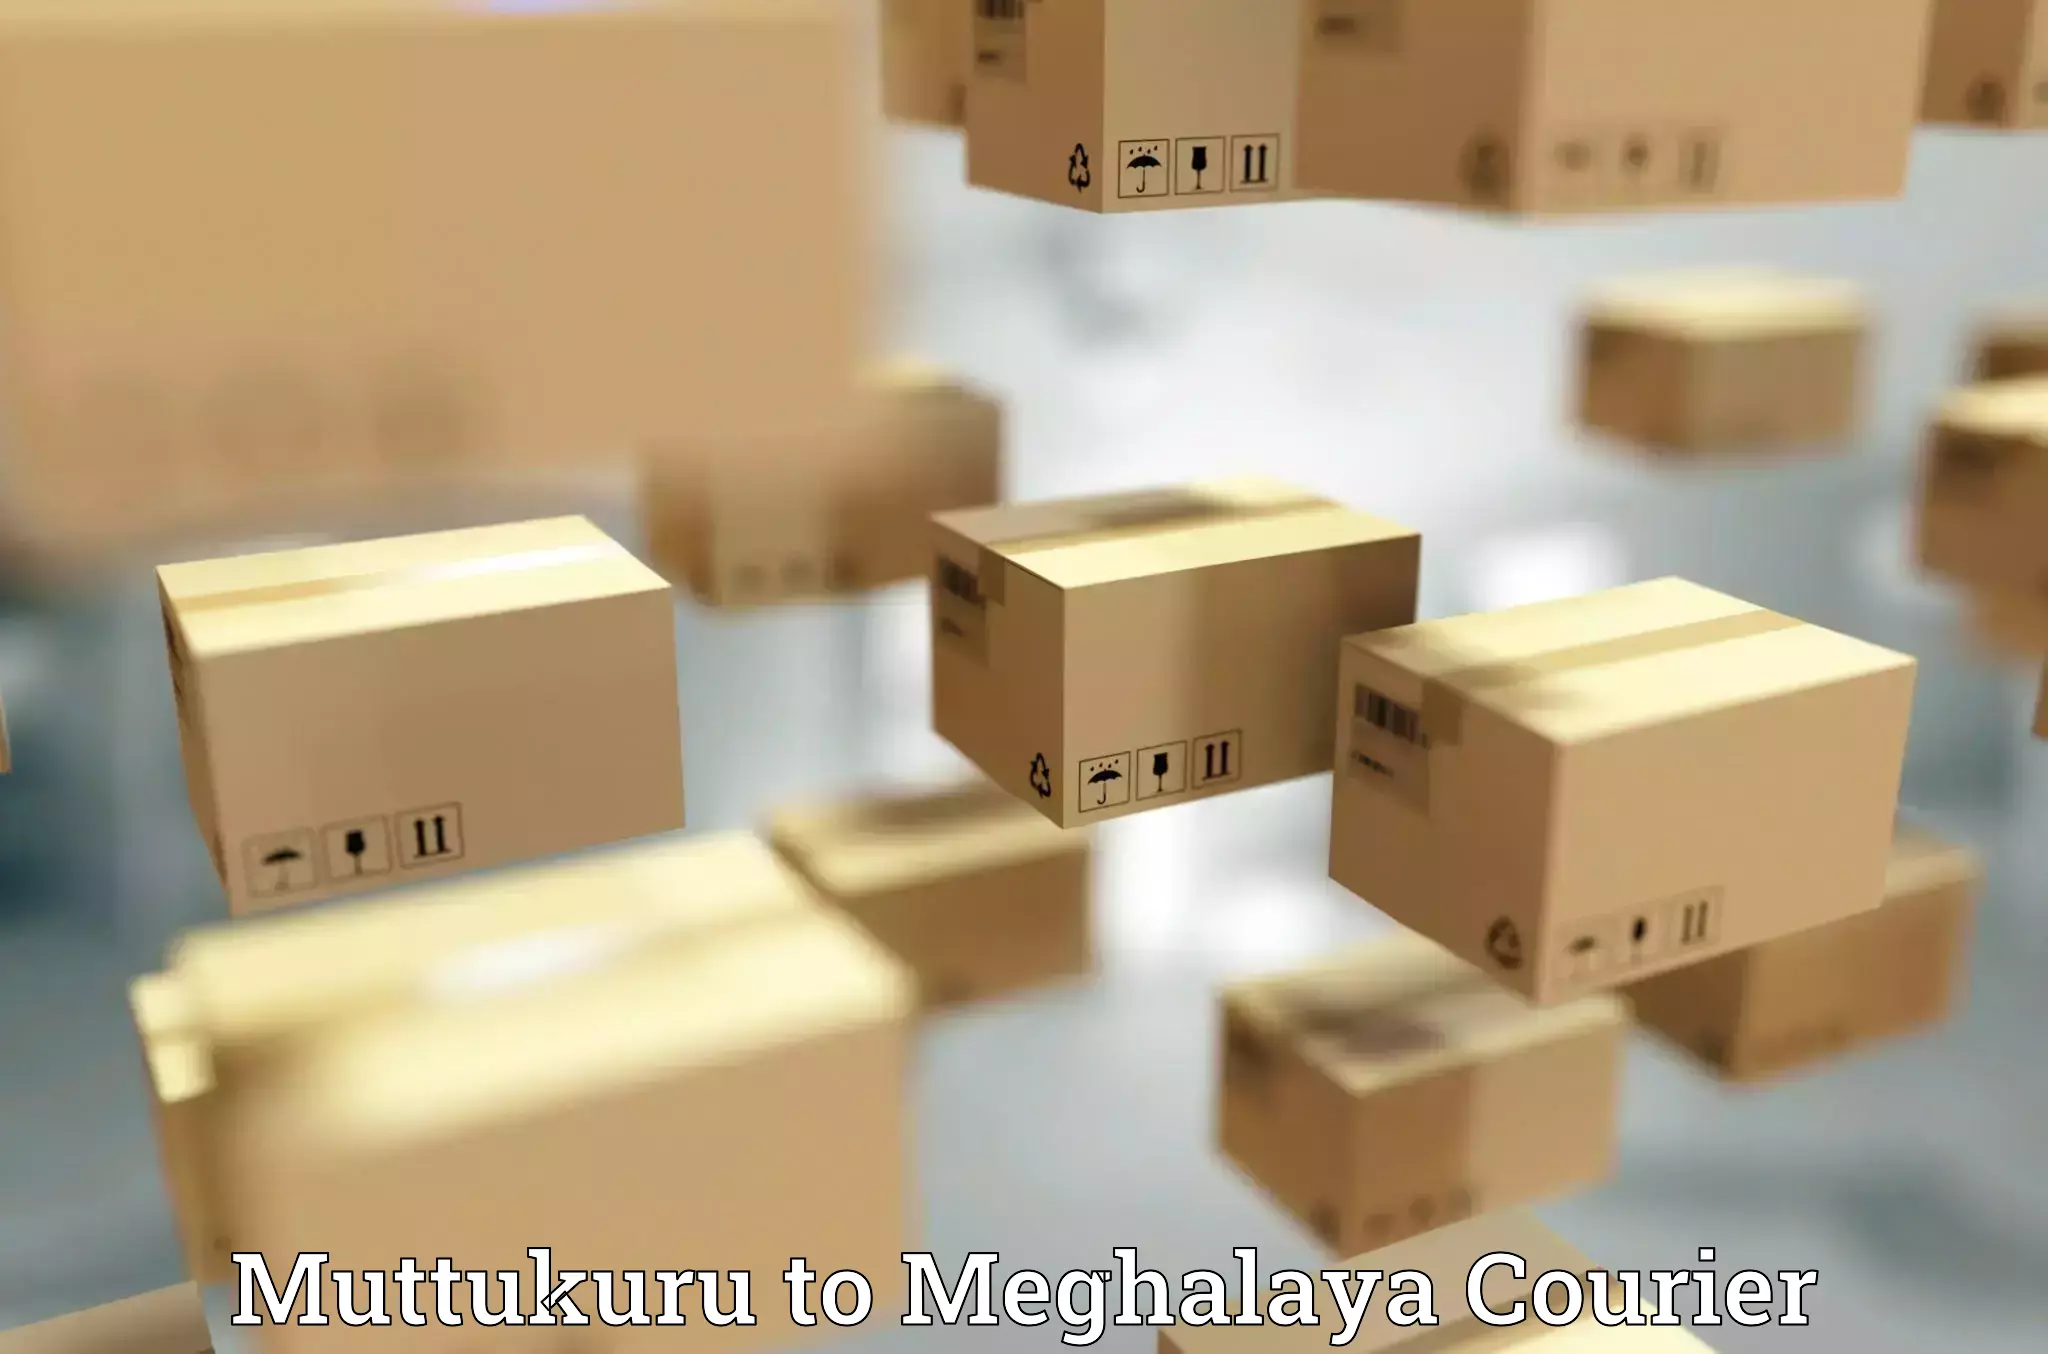 Urgent courier needs Muttukuru to Tura